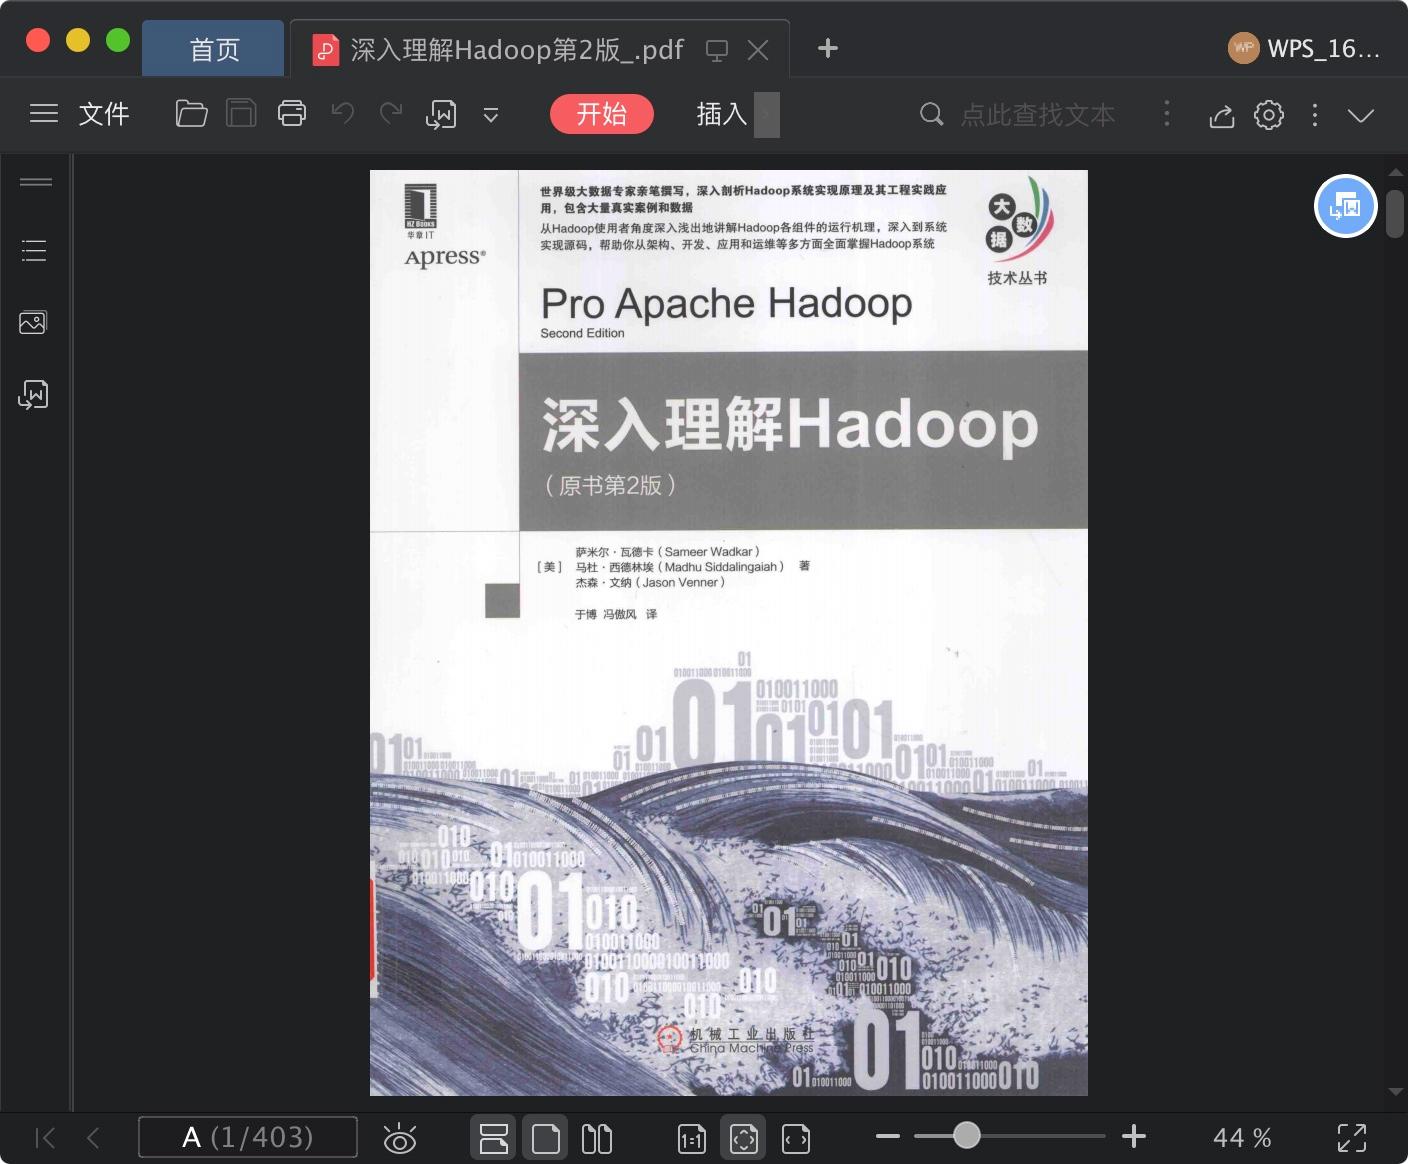 深入理解Hadoop第2版pdf电子书籍下载百度网盘